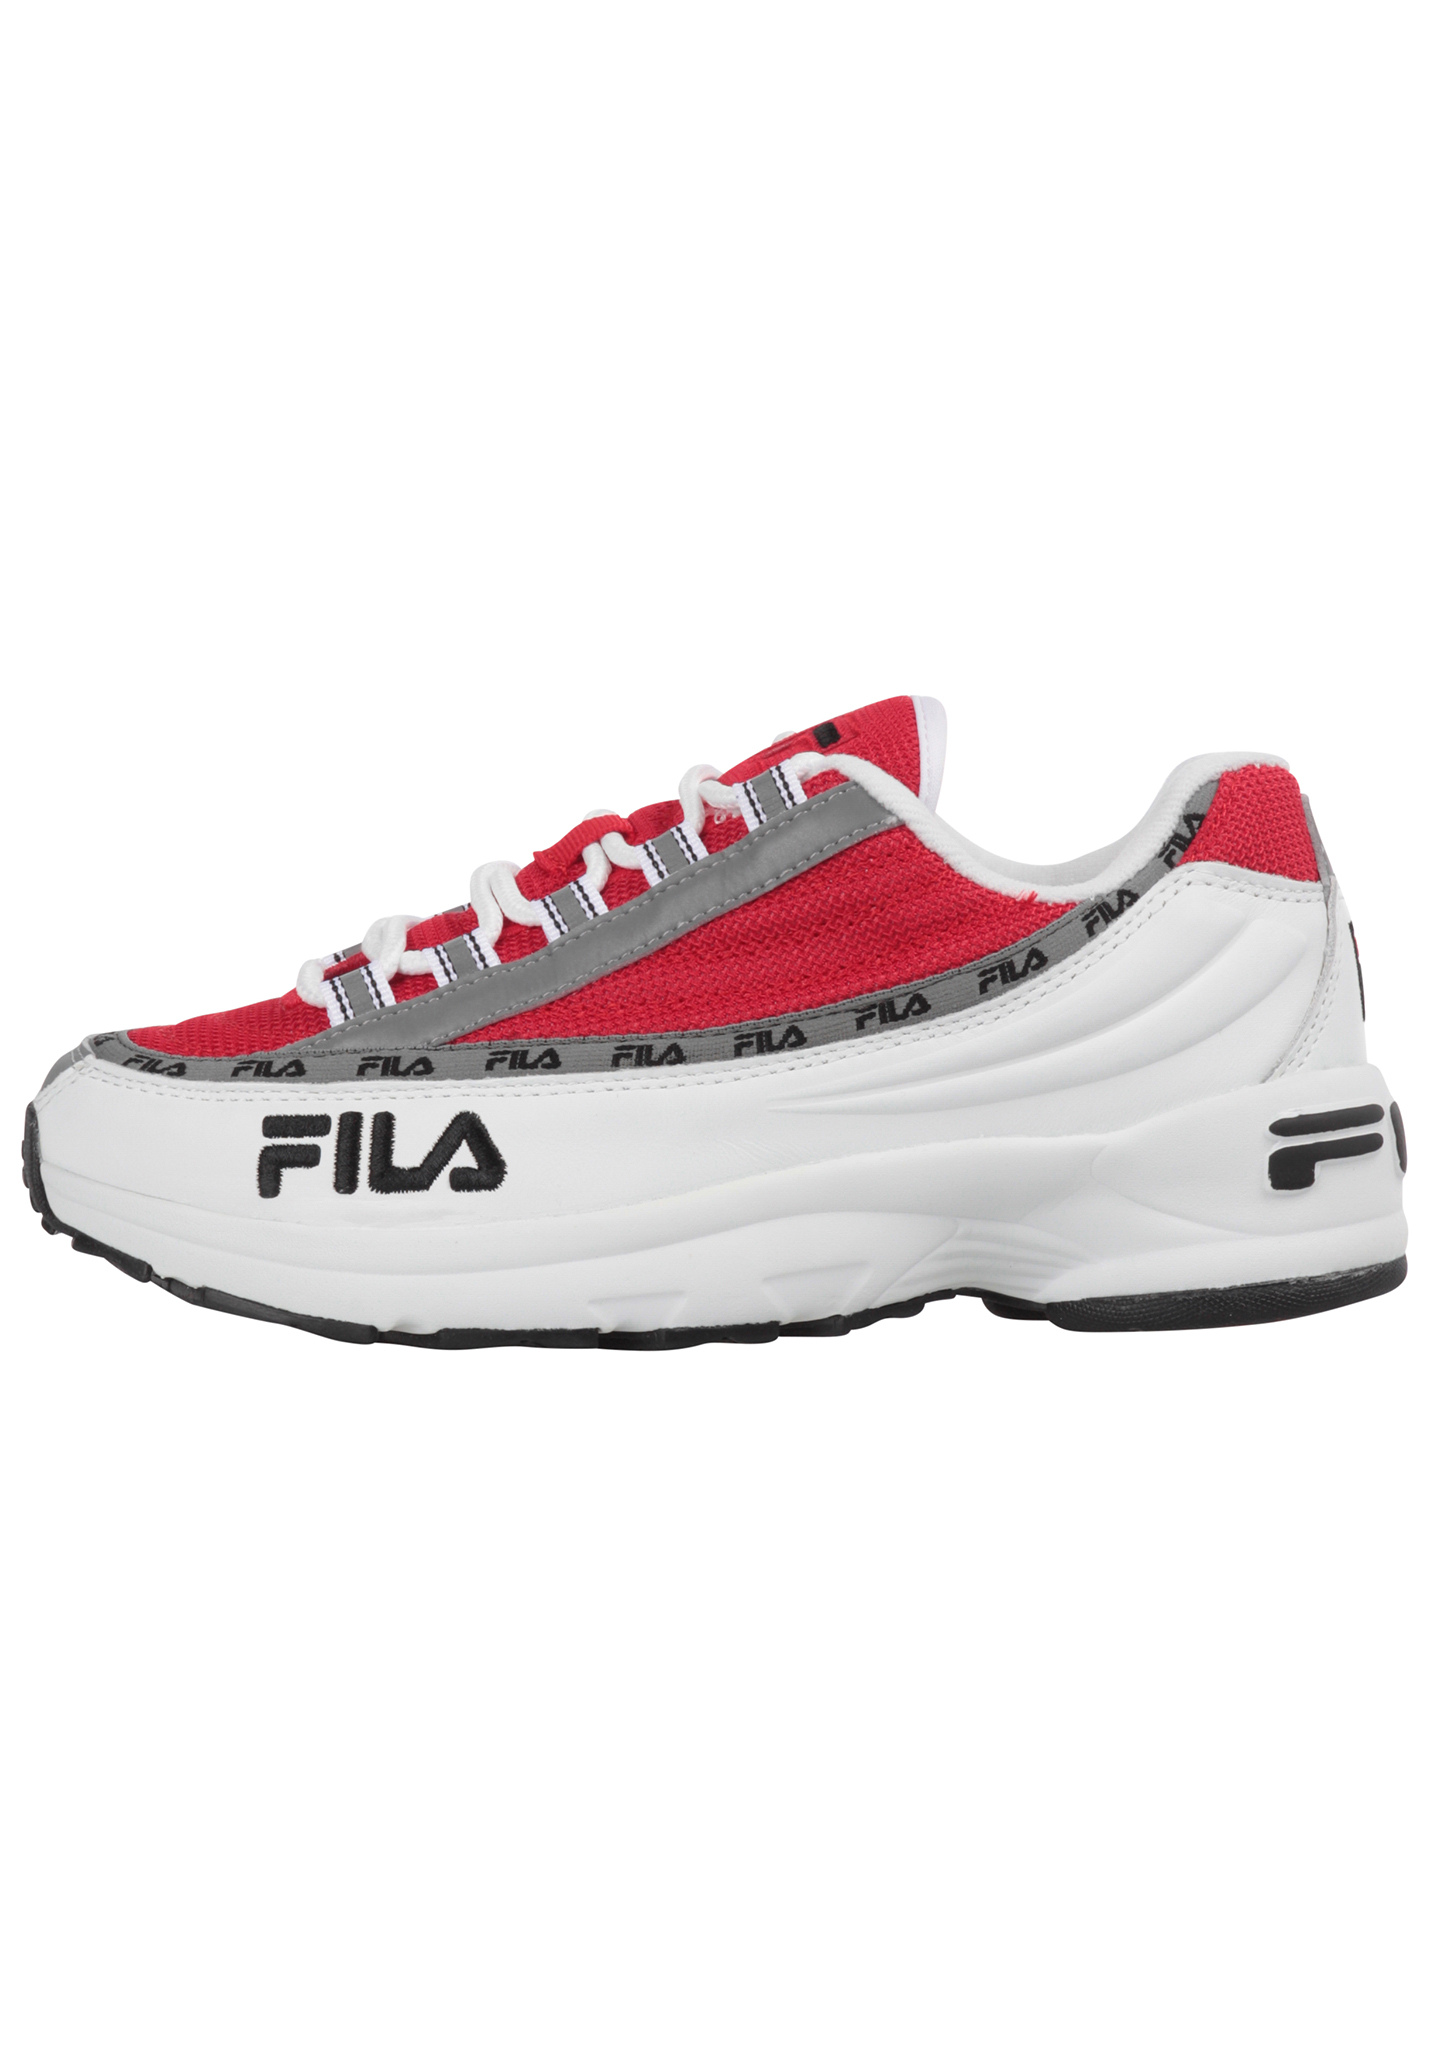 Fila DSTR97 Sneaker weiß/fila rot 41